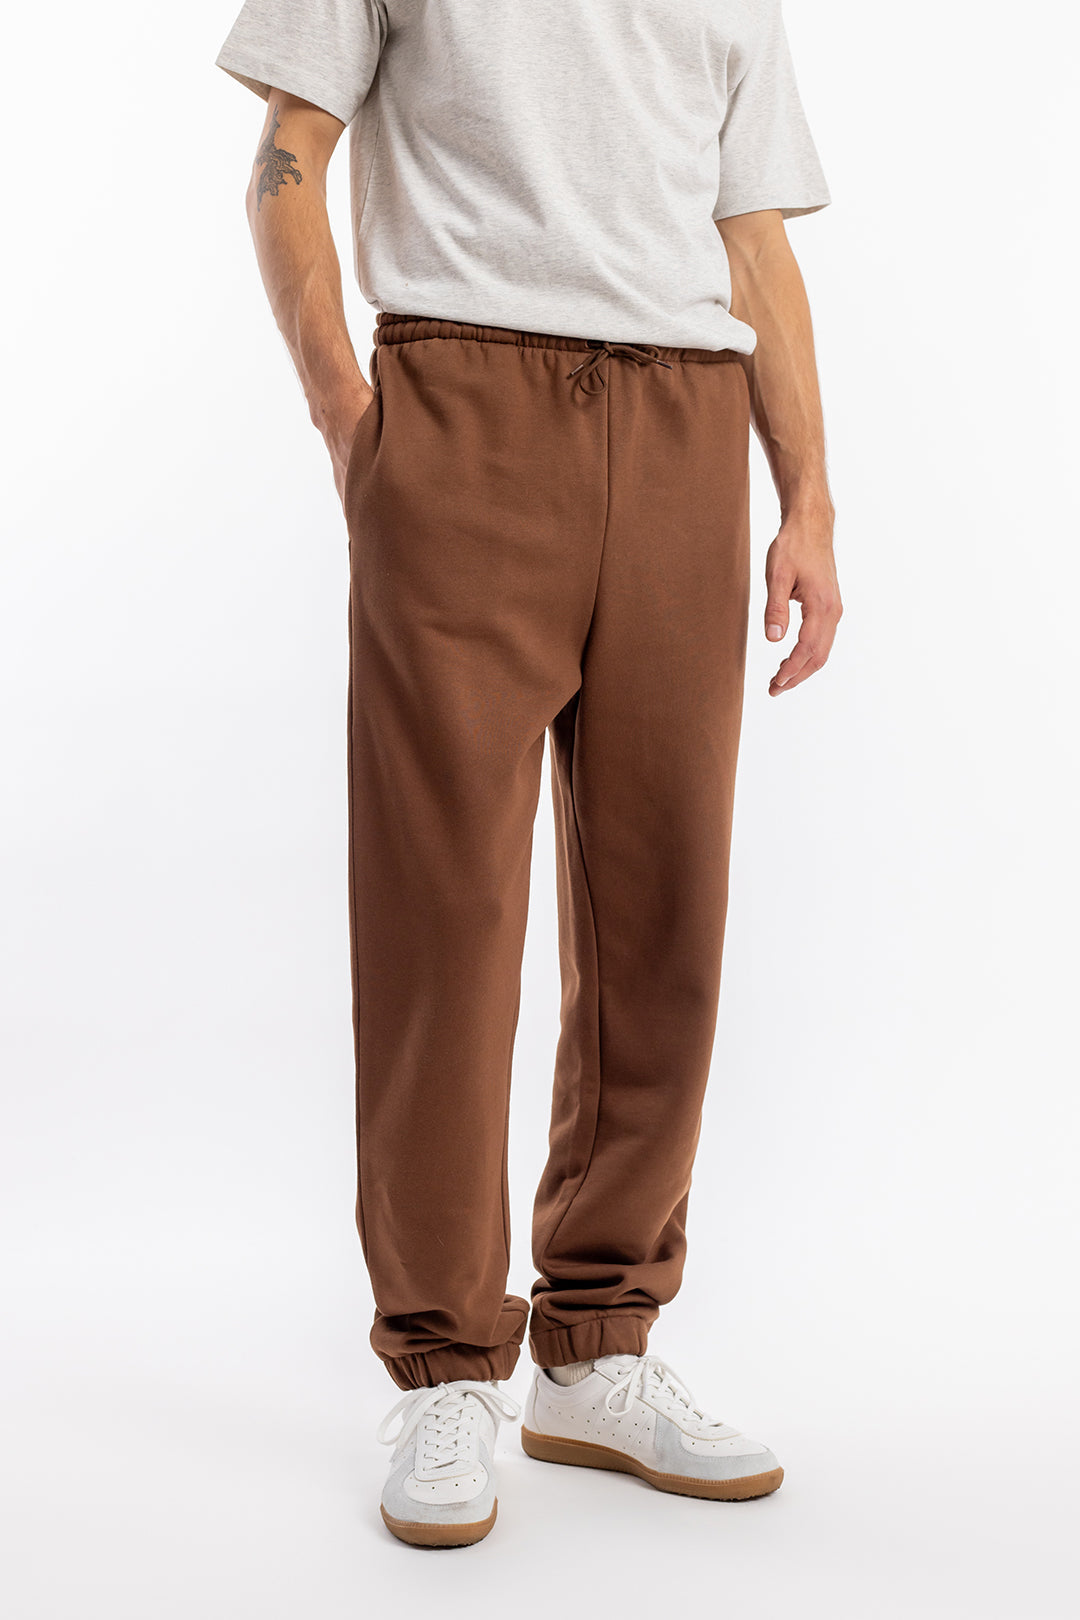 Pantalon de jogging à logo marron foncé en coton biologique par Rotholz